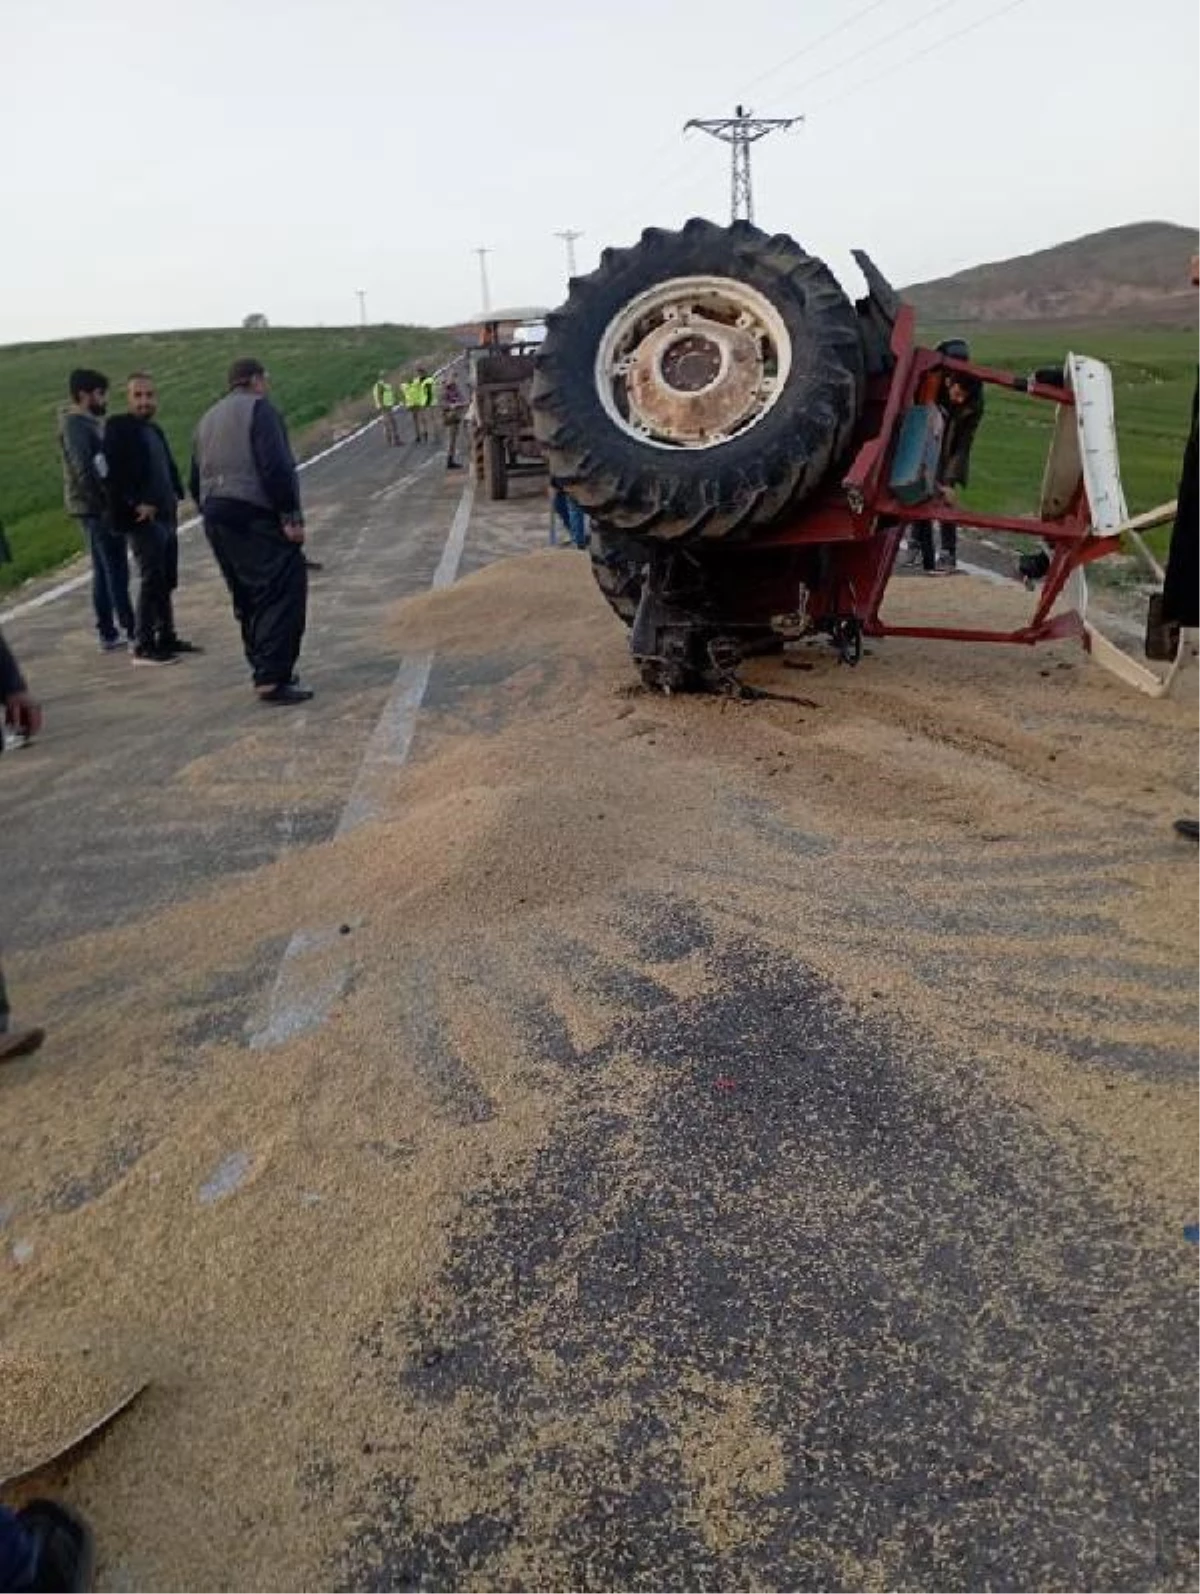 Römorktaki aşırı yük nedeniyle ikiye ayrılan traktörün sürücüsü yaralandı